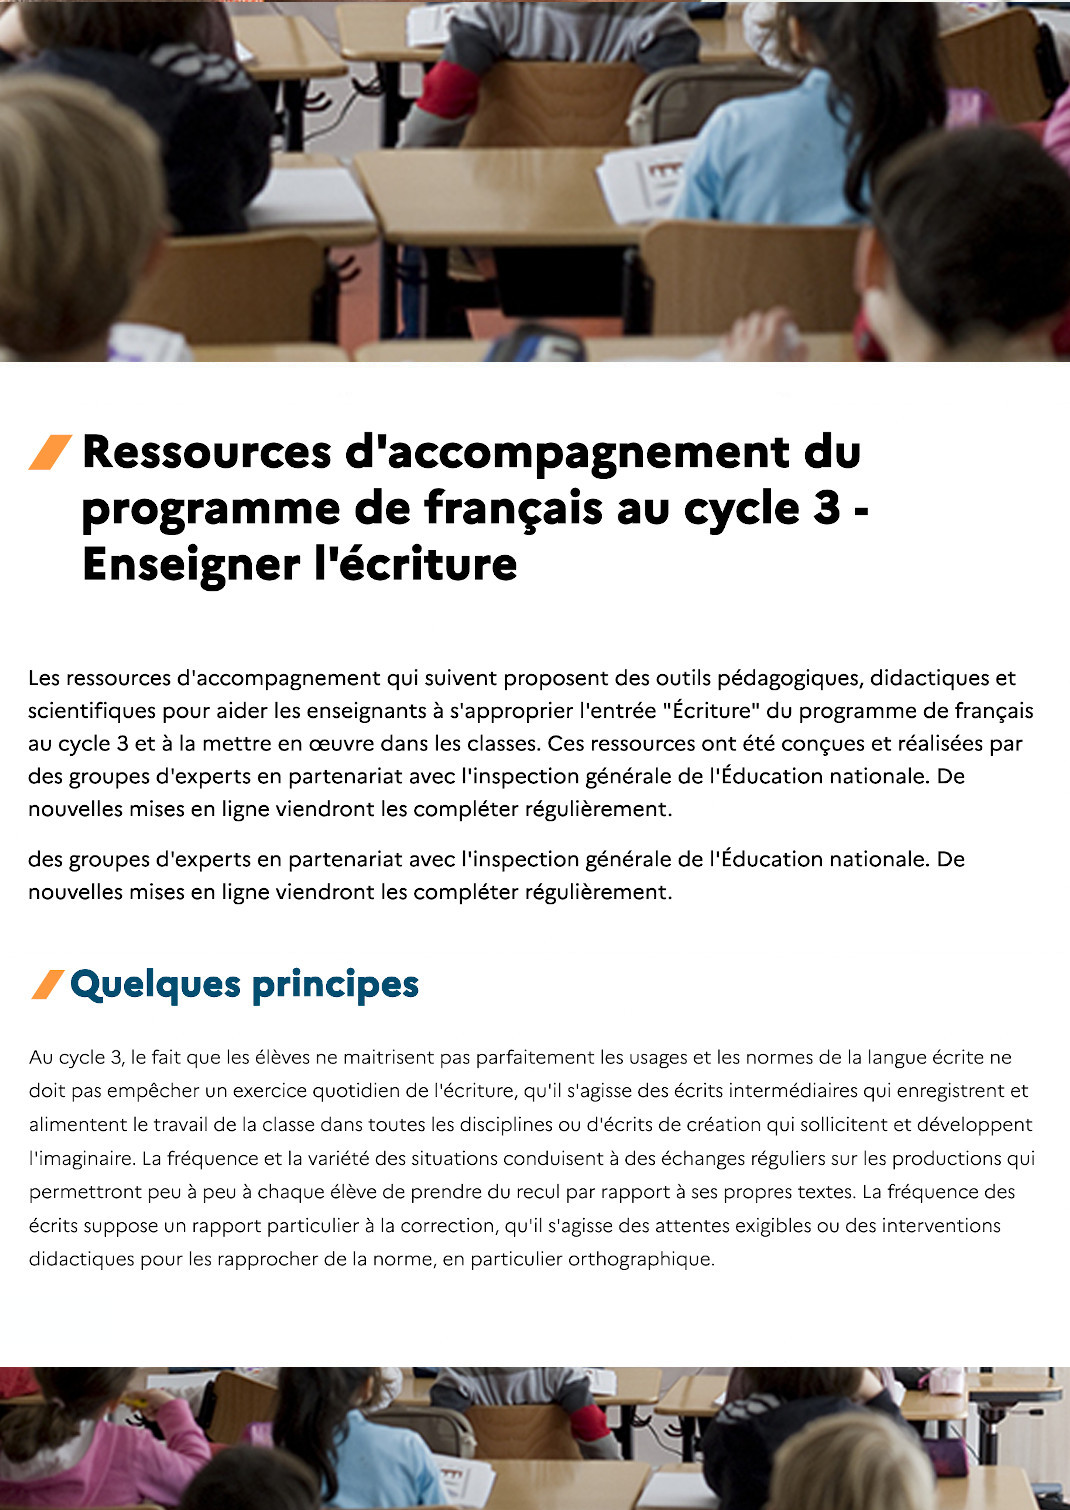 Ressources d'accompagnement du programme de français au cycle 3 - Enseigner l'écriture